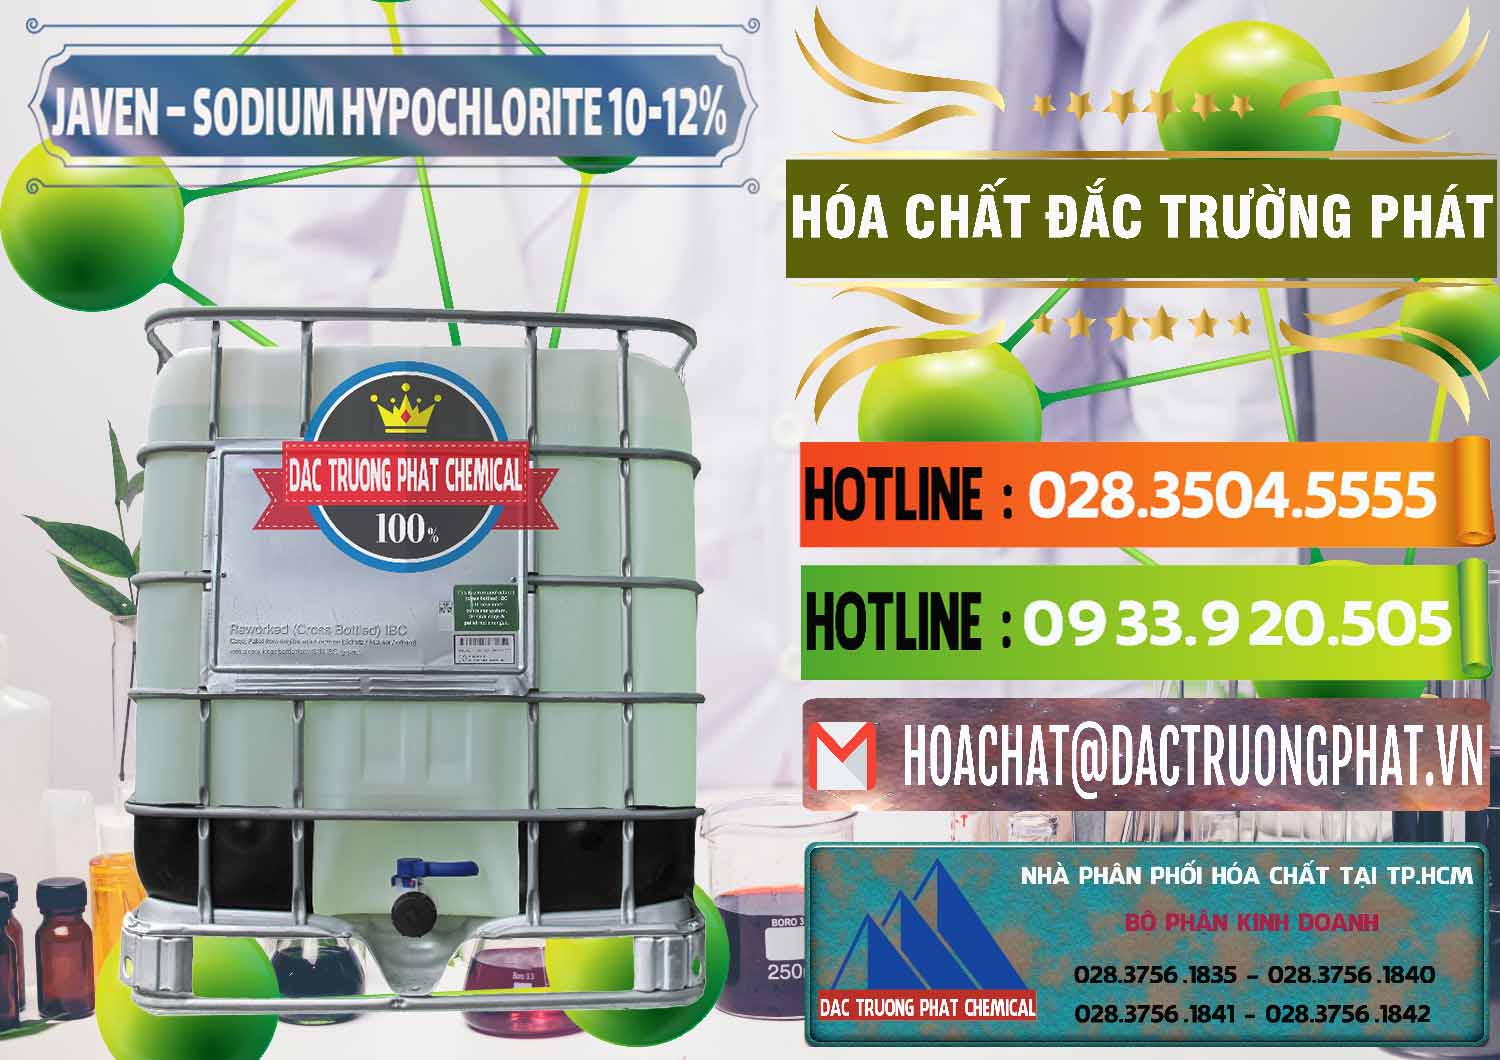 Cty kinh doanh ( bán ) Javen - Sodium Hypochlorite 10-12% Việt Nam - 0188 - Đơn vị chuyên cung cấp và bán hóa chất tại TP.HCM - cungcaphoachat.com.vn